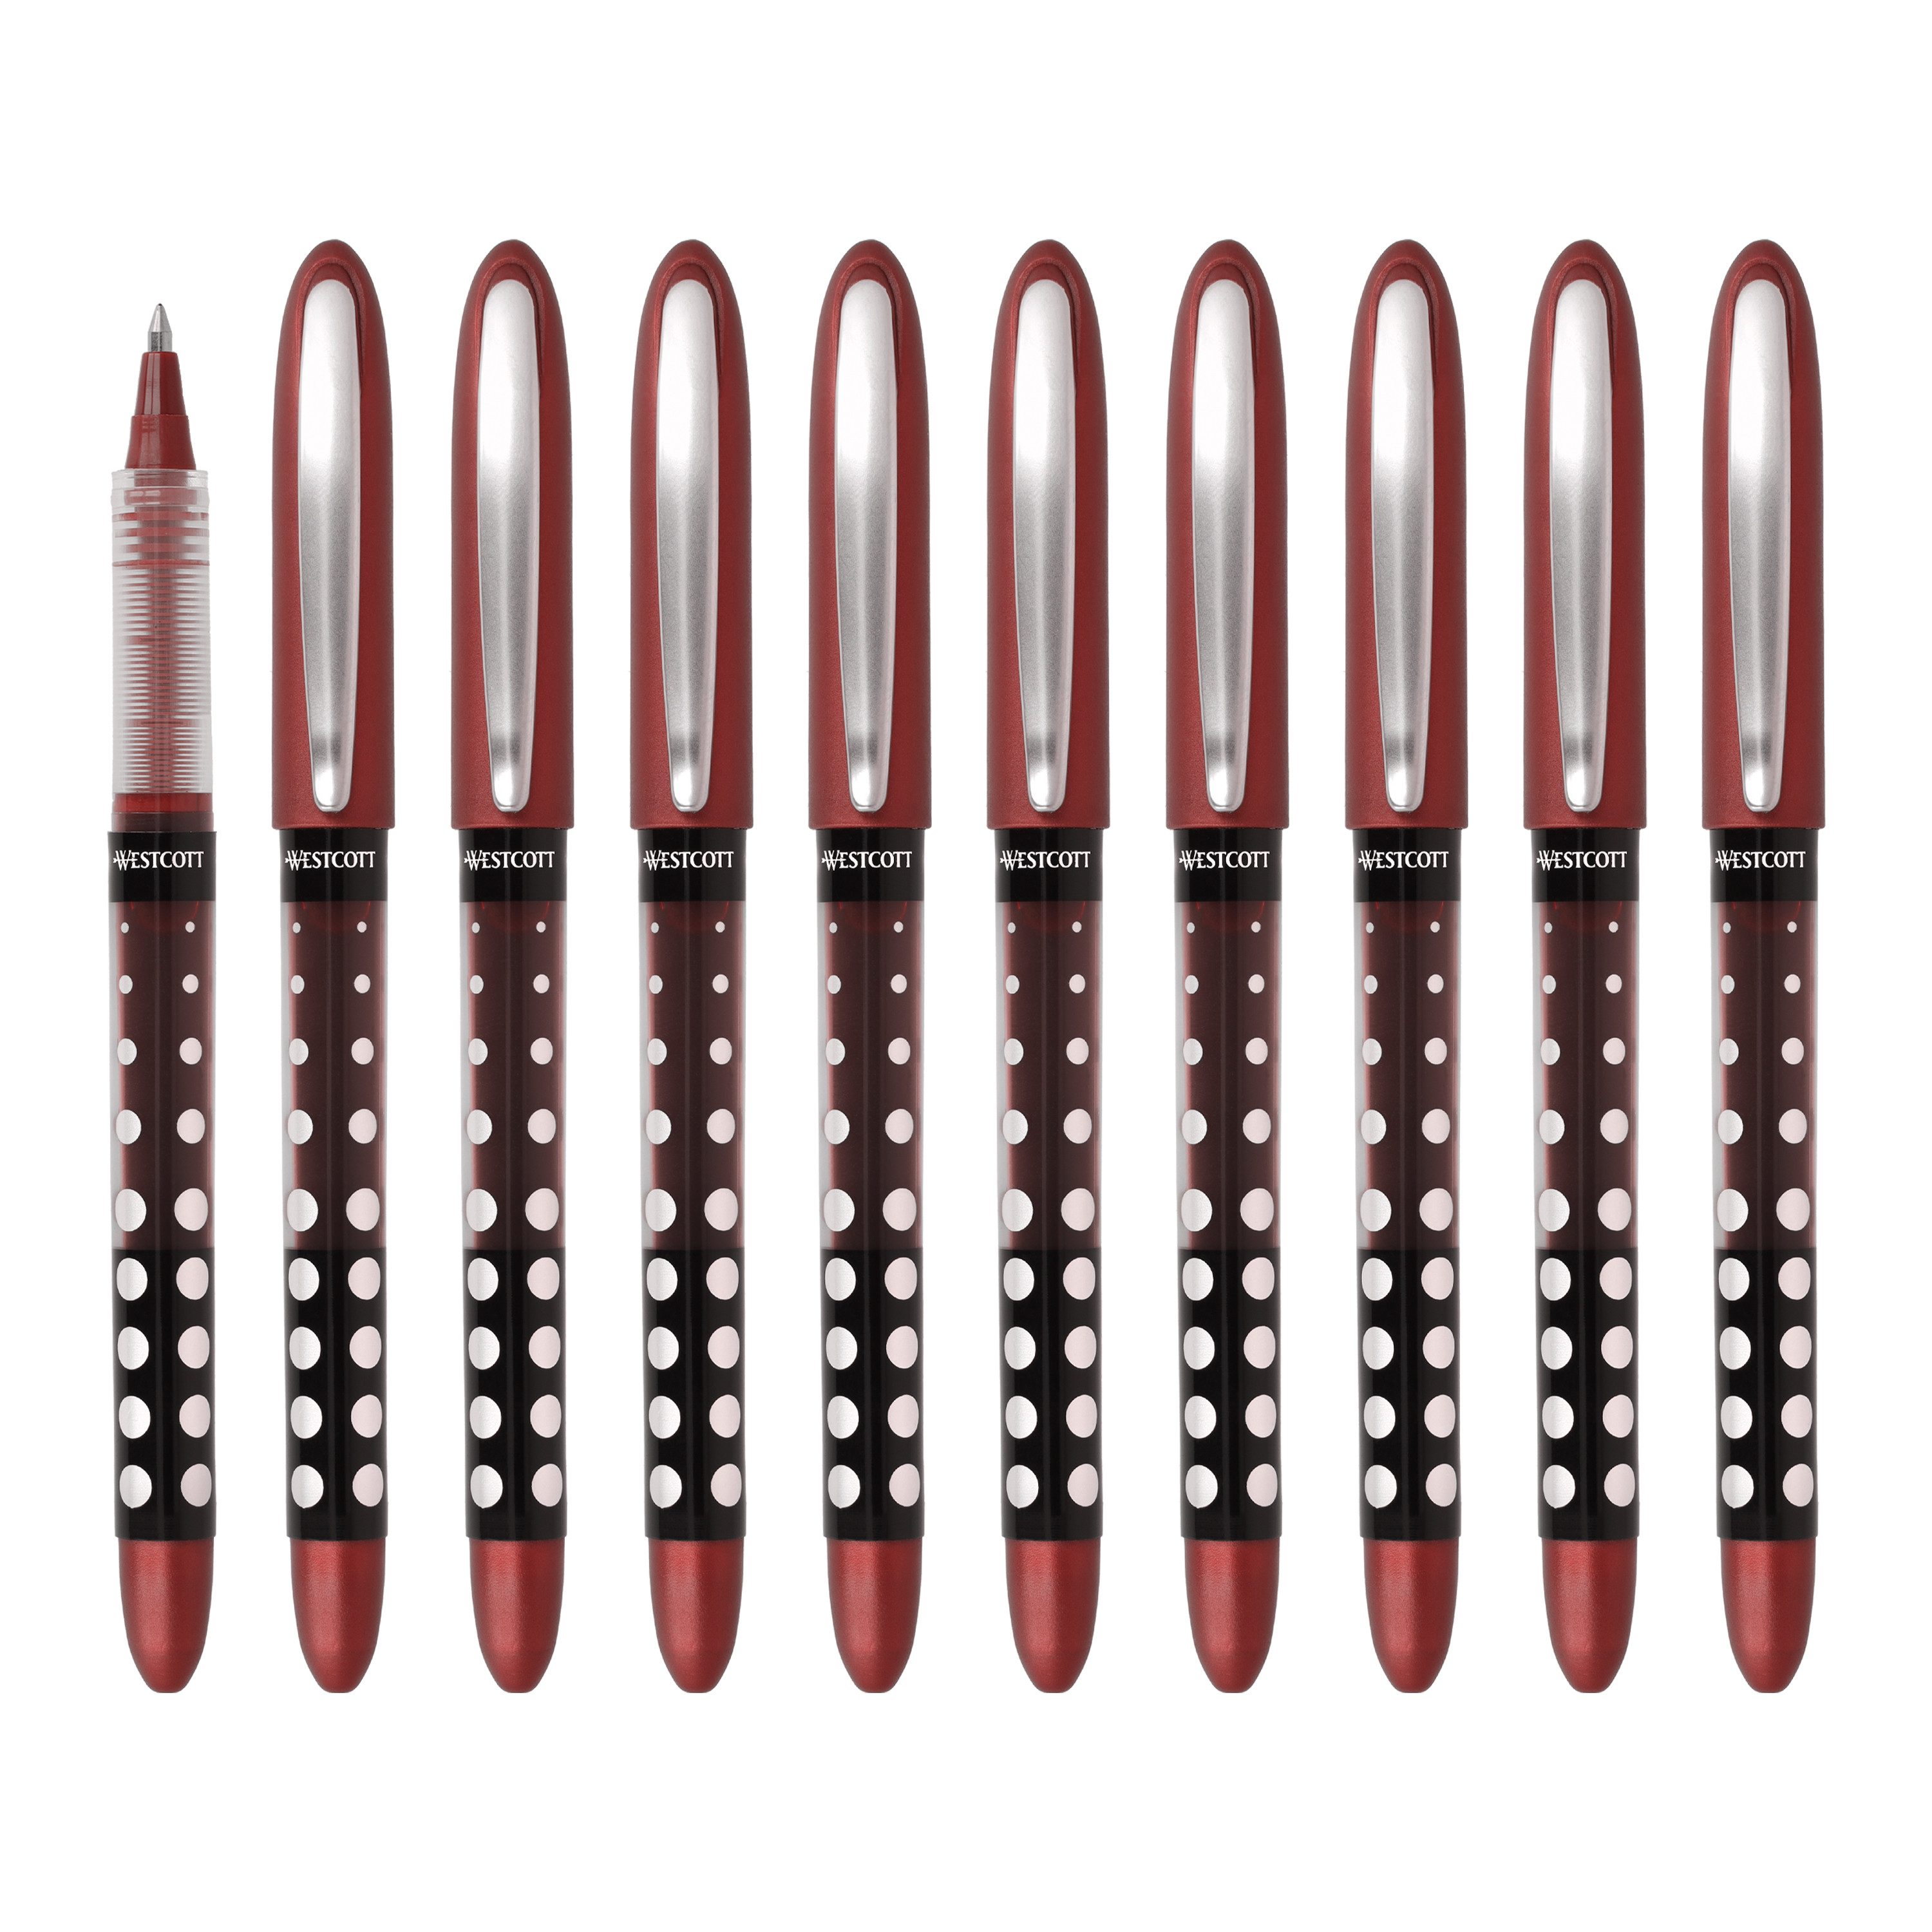 WESTCOTT Tintenroller Rot 10 Stück, Rollerball Pen mit roterTinte, 0,5 mm Strichstärke, (Vorteilspack, 10-tlg), transp. Füllstandsanzeige, Kapillartechnologie, ergonomischer Griff